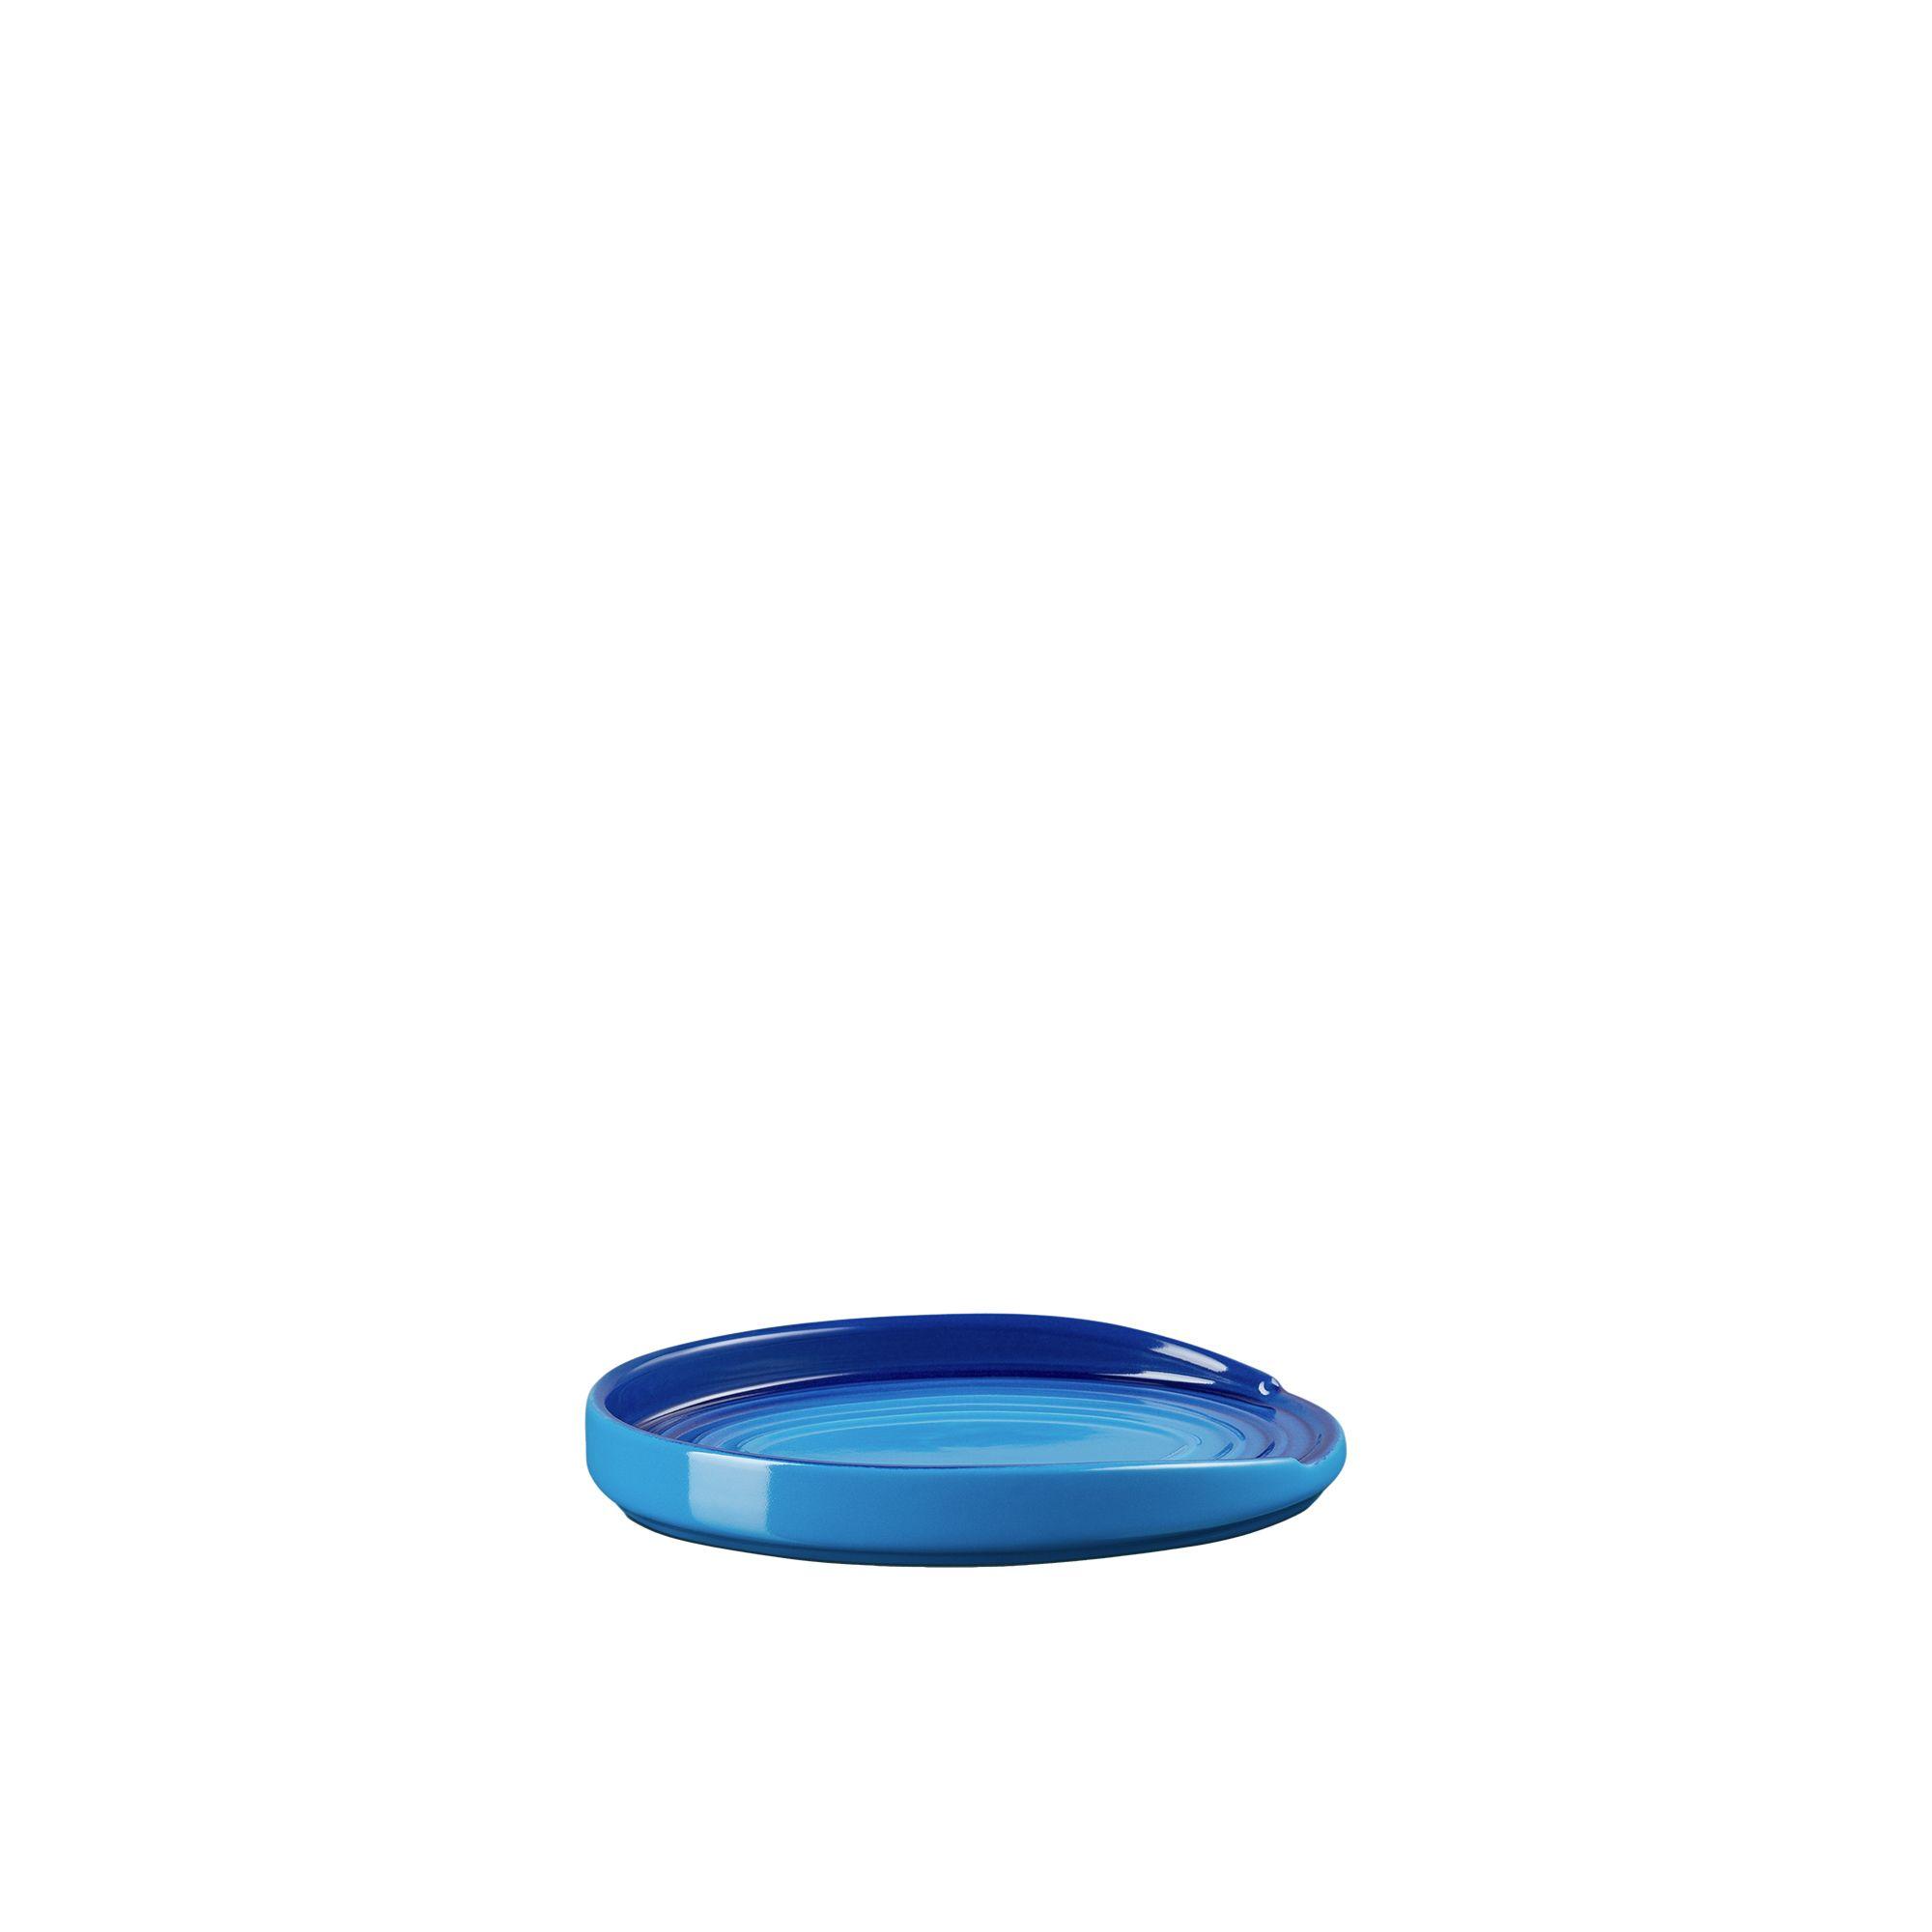 Le Creuset Stoneware Spoon Rest Azure Blue Image 5